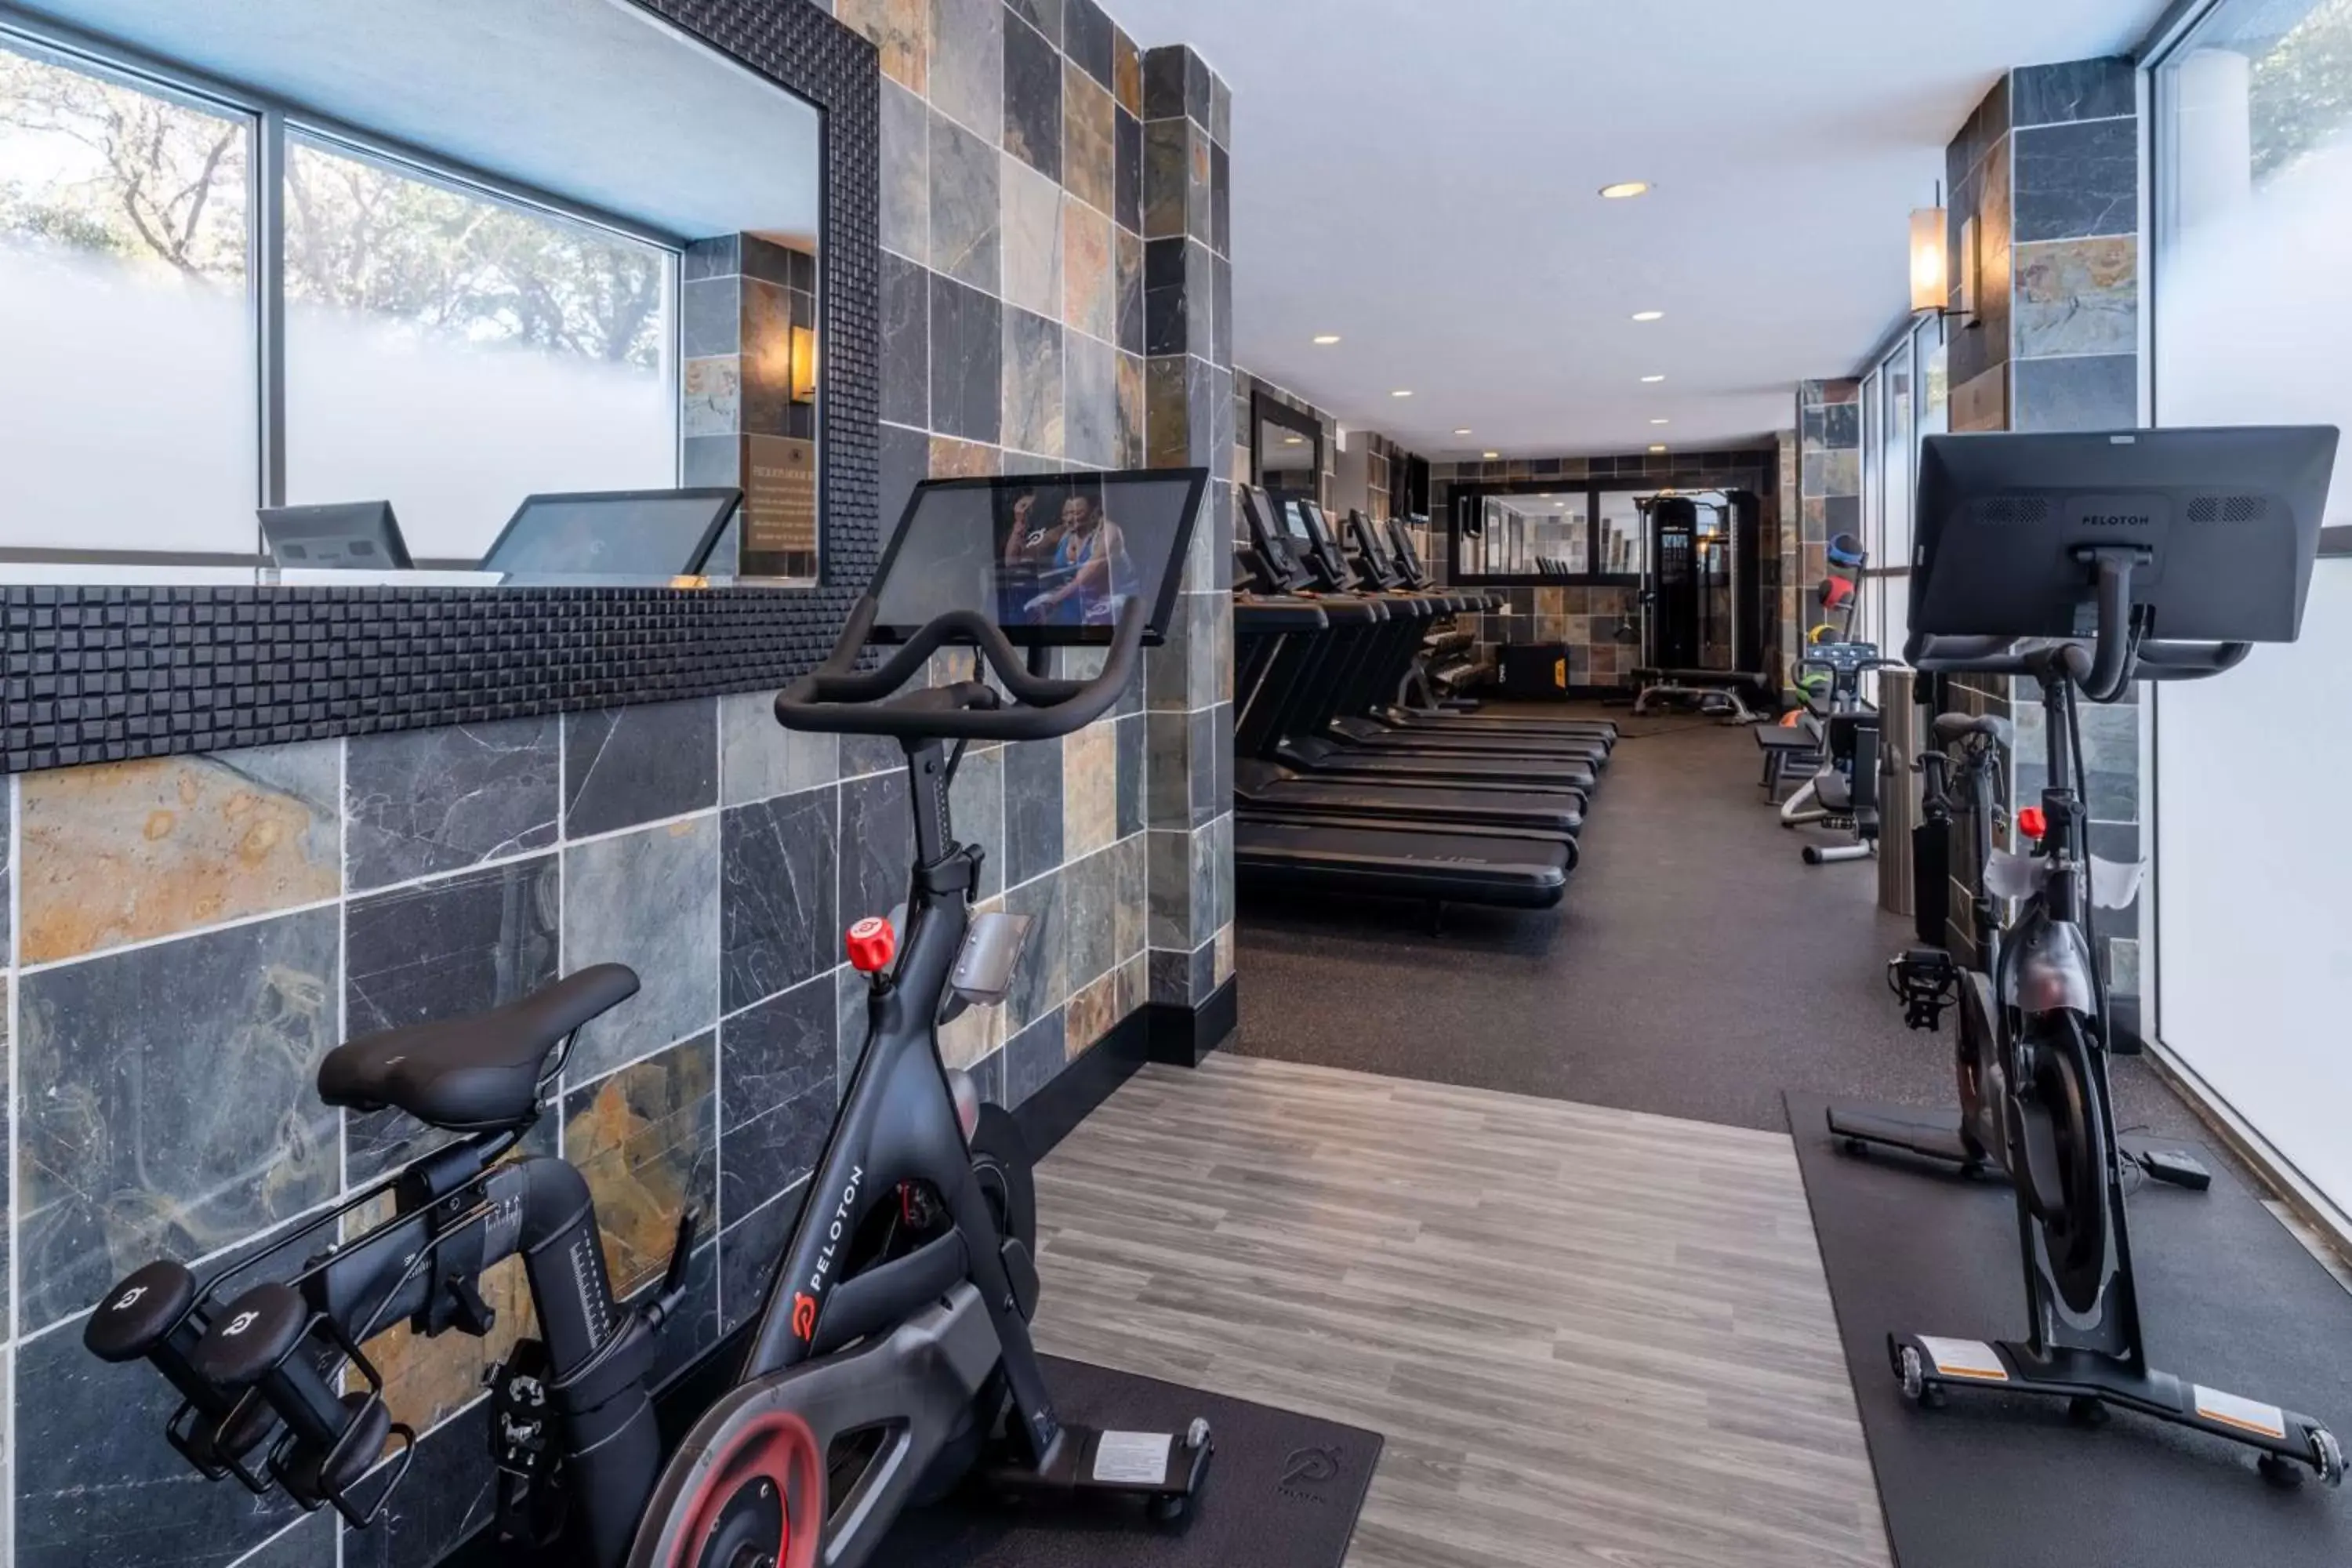 Fitness centre/facilities, Fitness Center/Facilities in Hilton Dallas Lincoln Centre